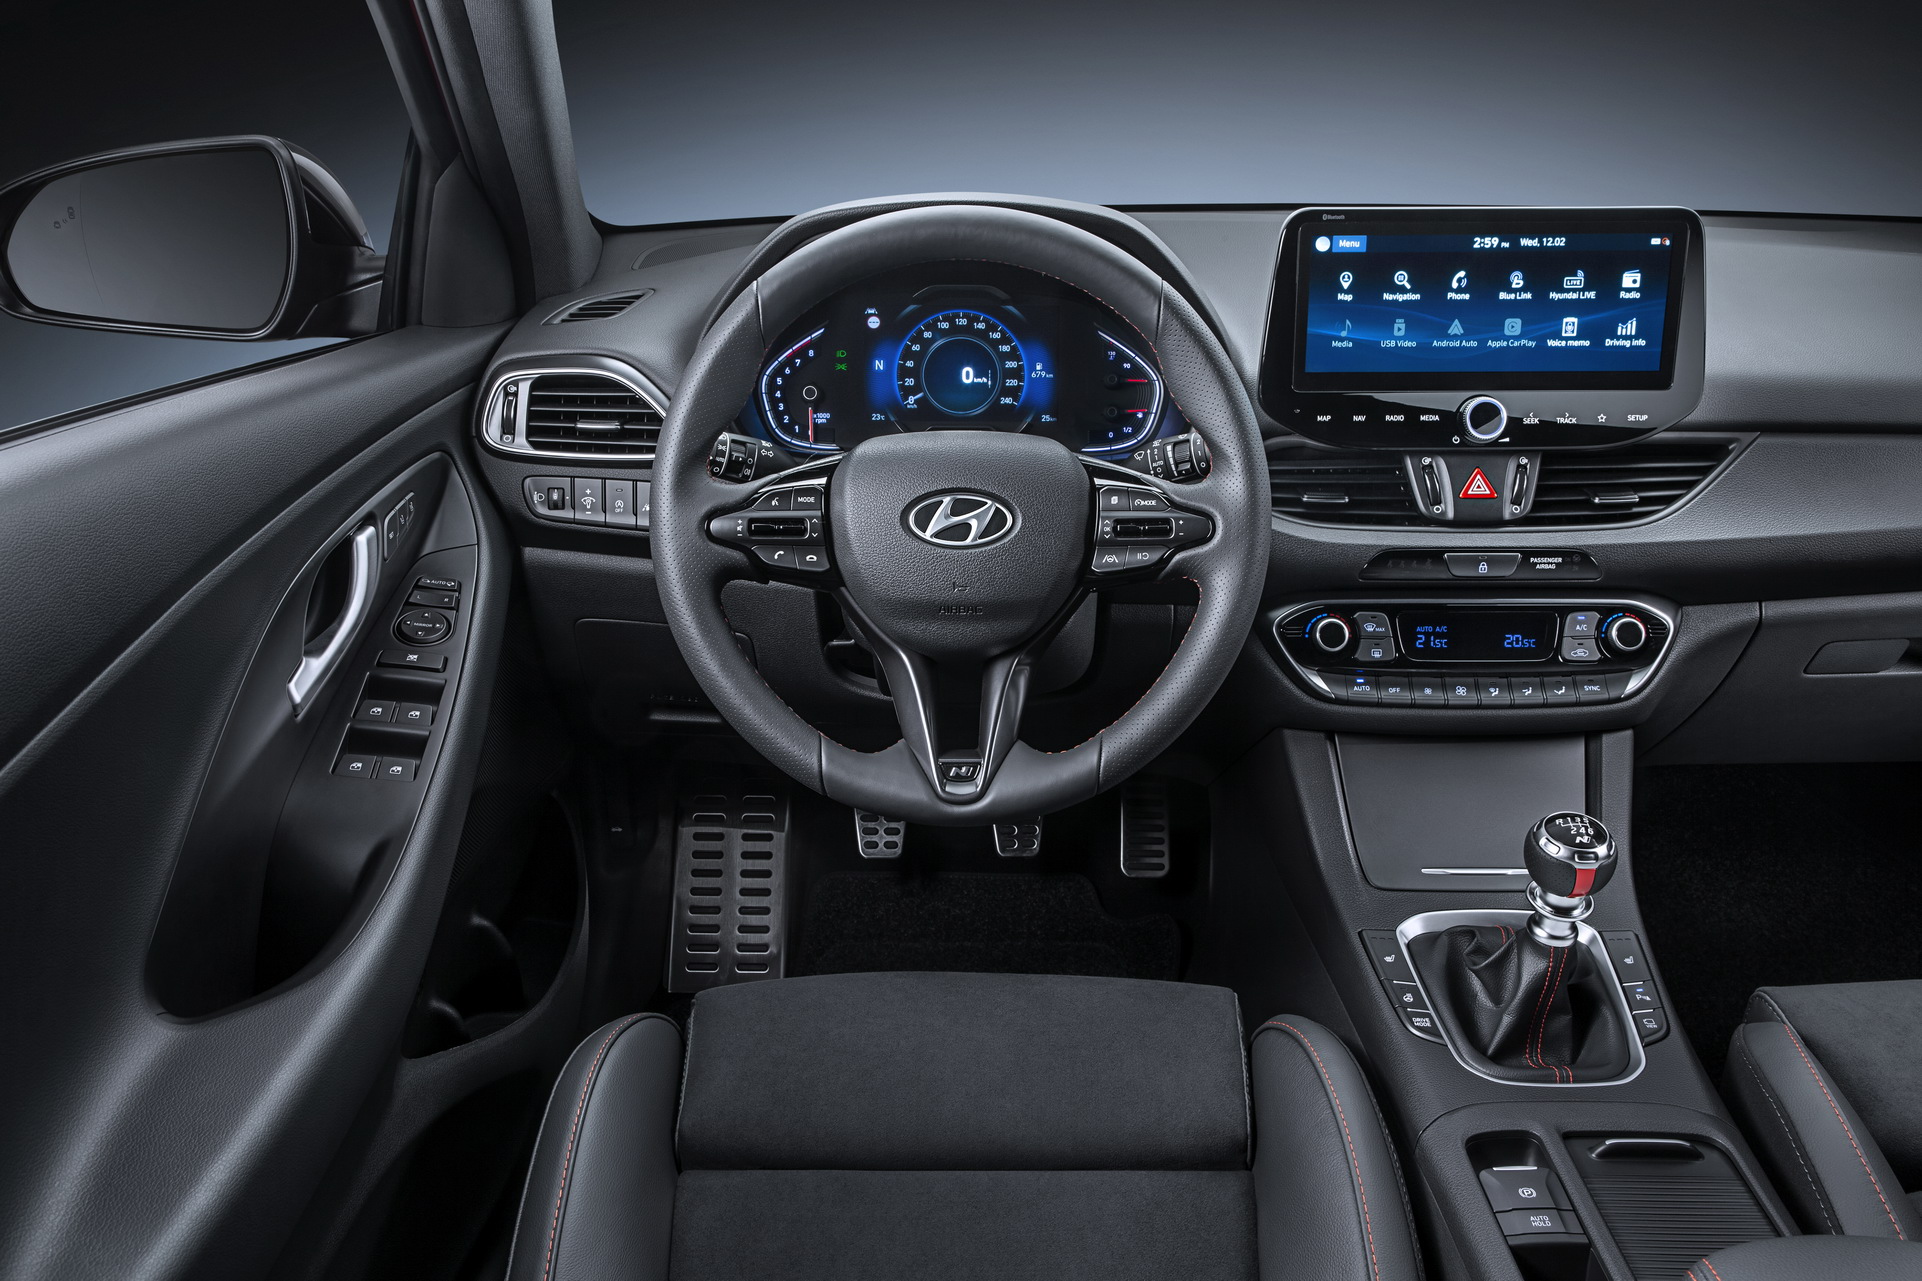 Hyundai i30 2020 đã lộ diện, thách thức Mazda 3 bằng những trang bị mới cực ngon